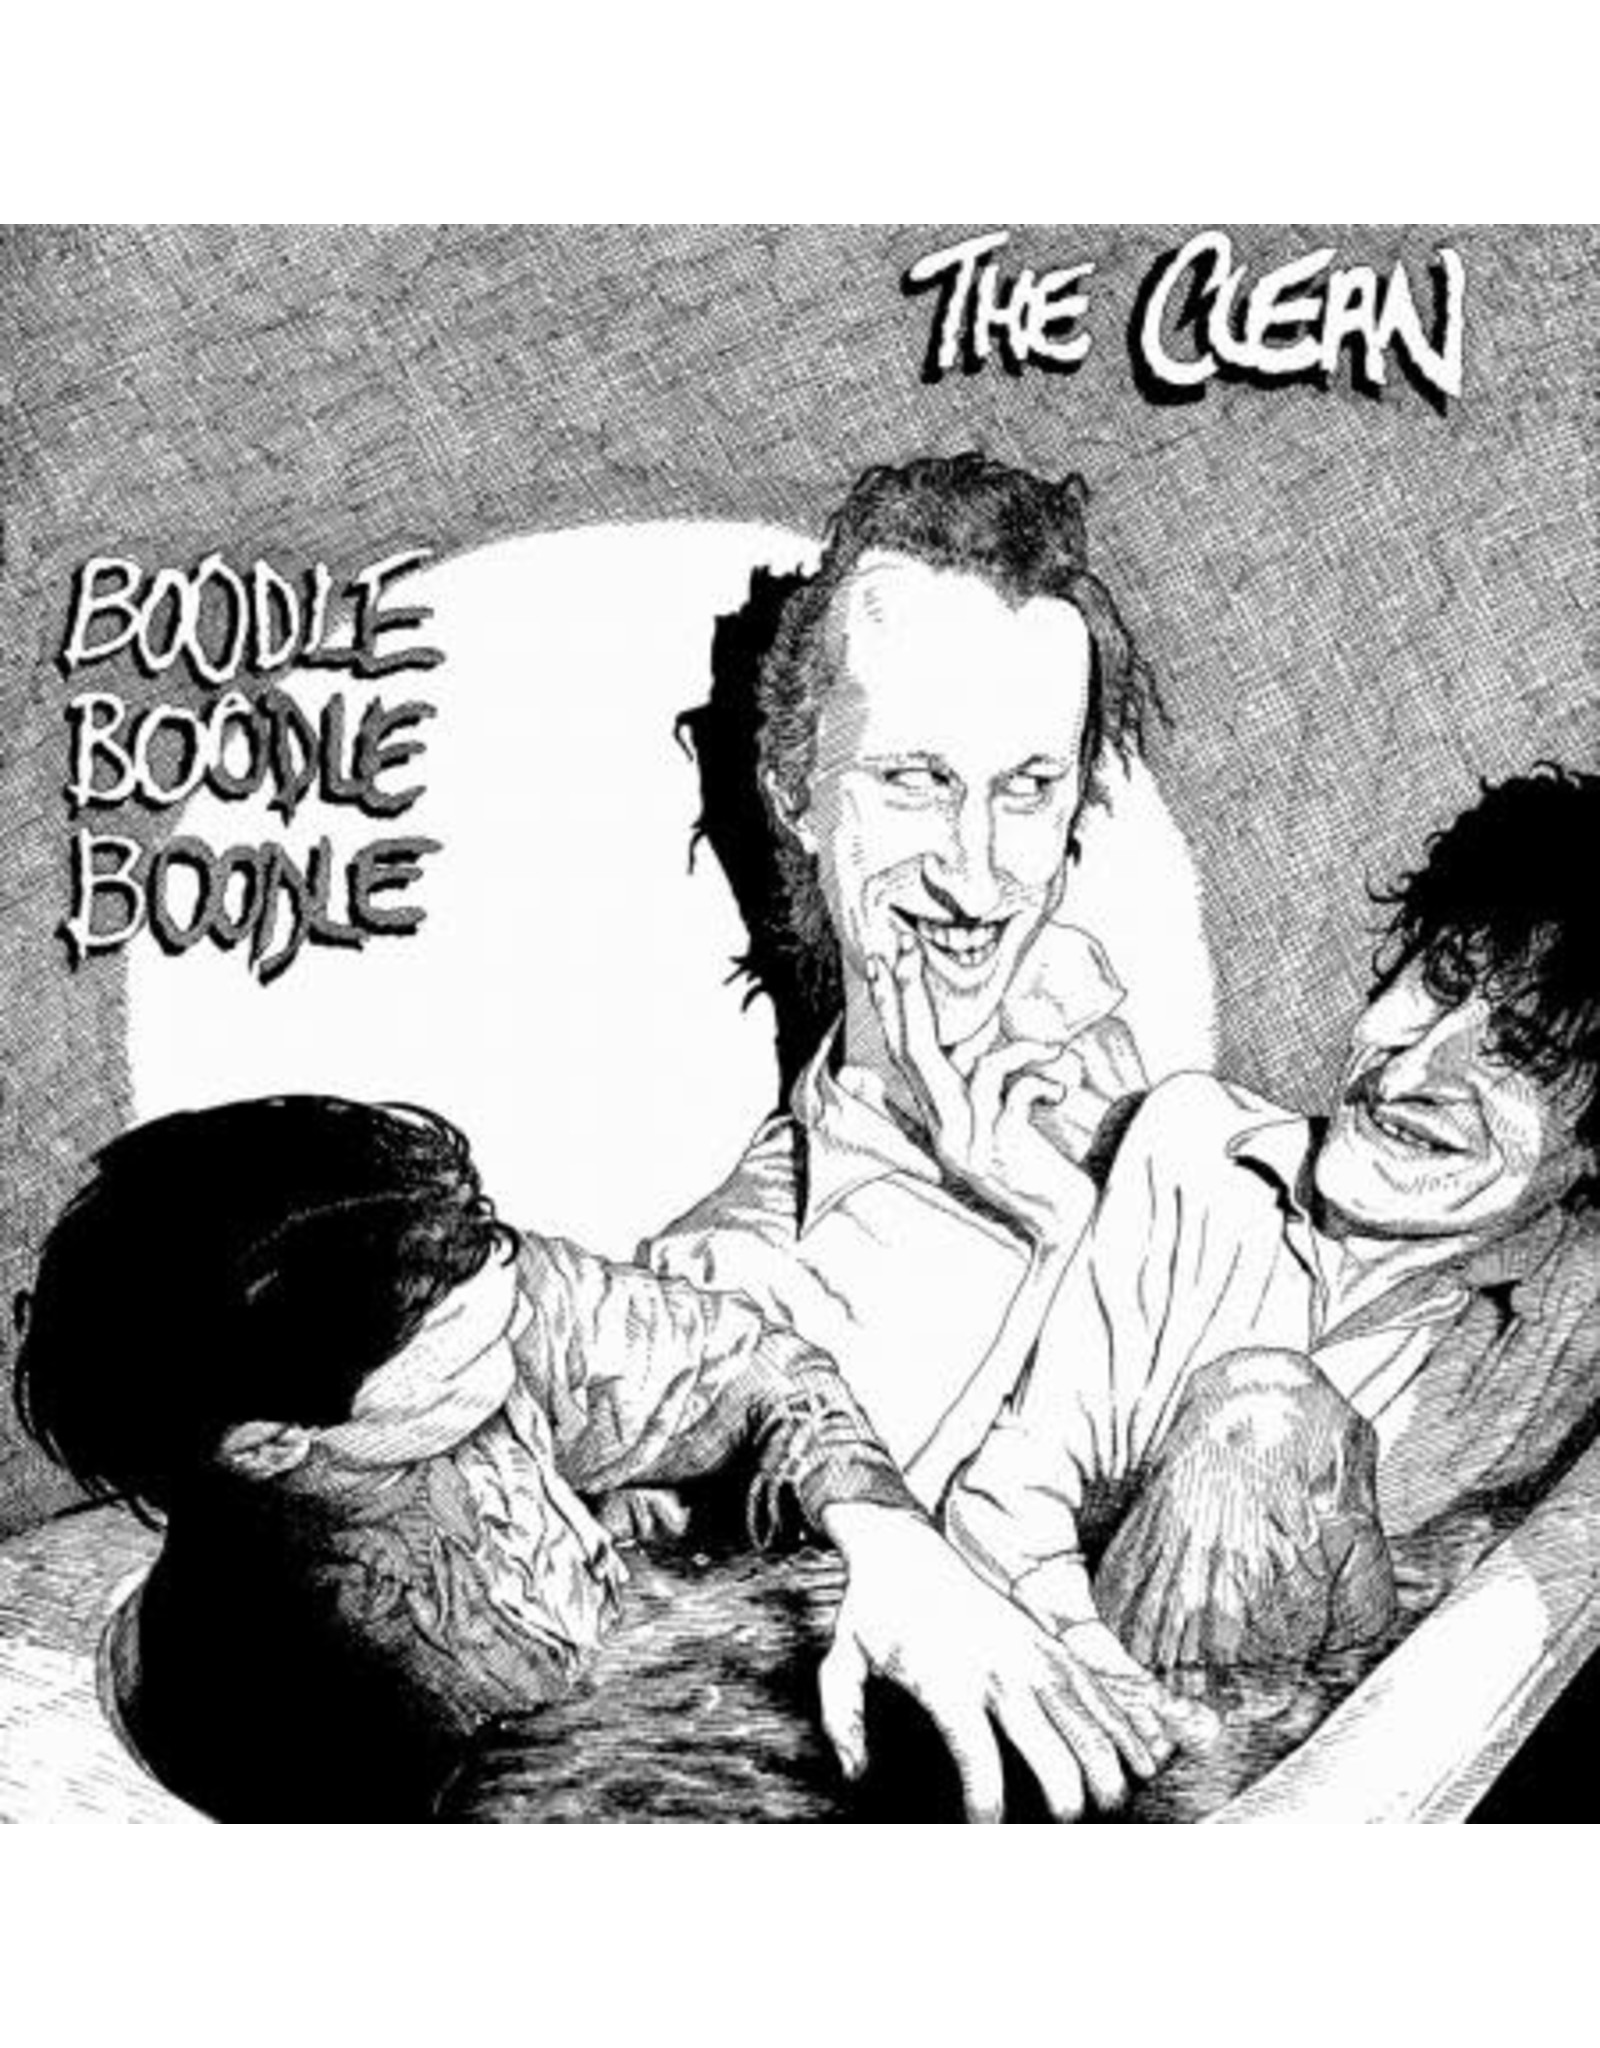 Merge Clean: Boodle Boodle Boodle (EP/Peak edition/colour) LP